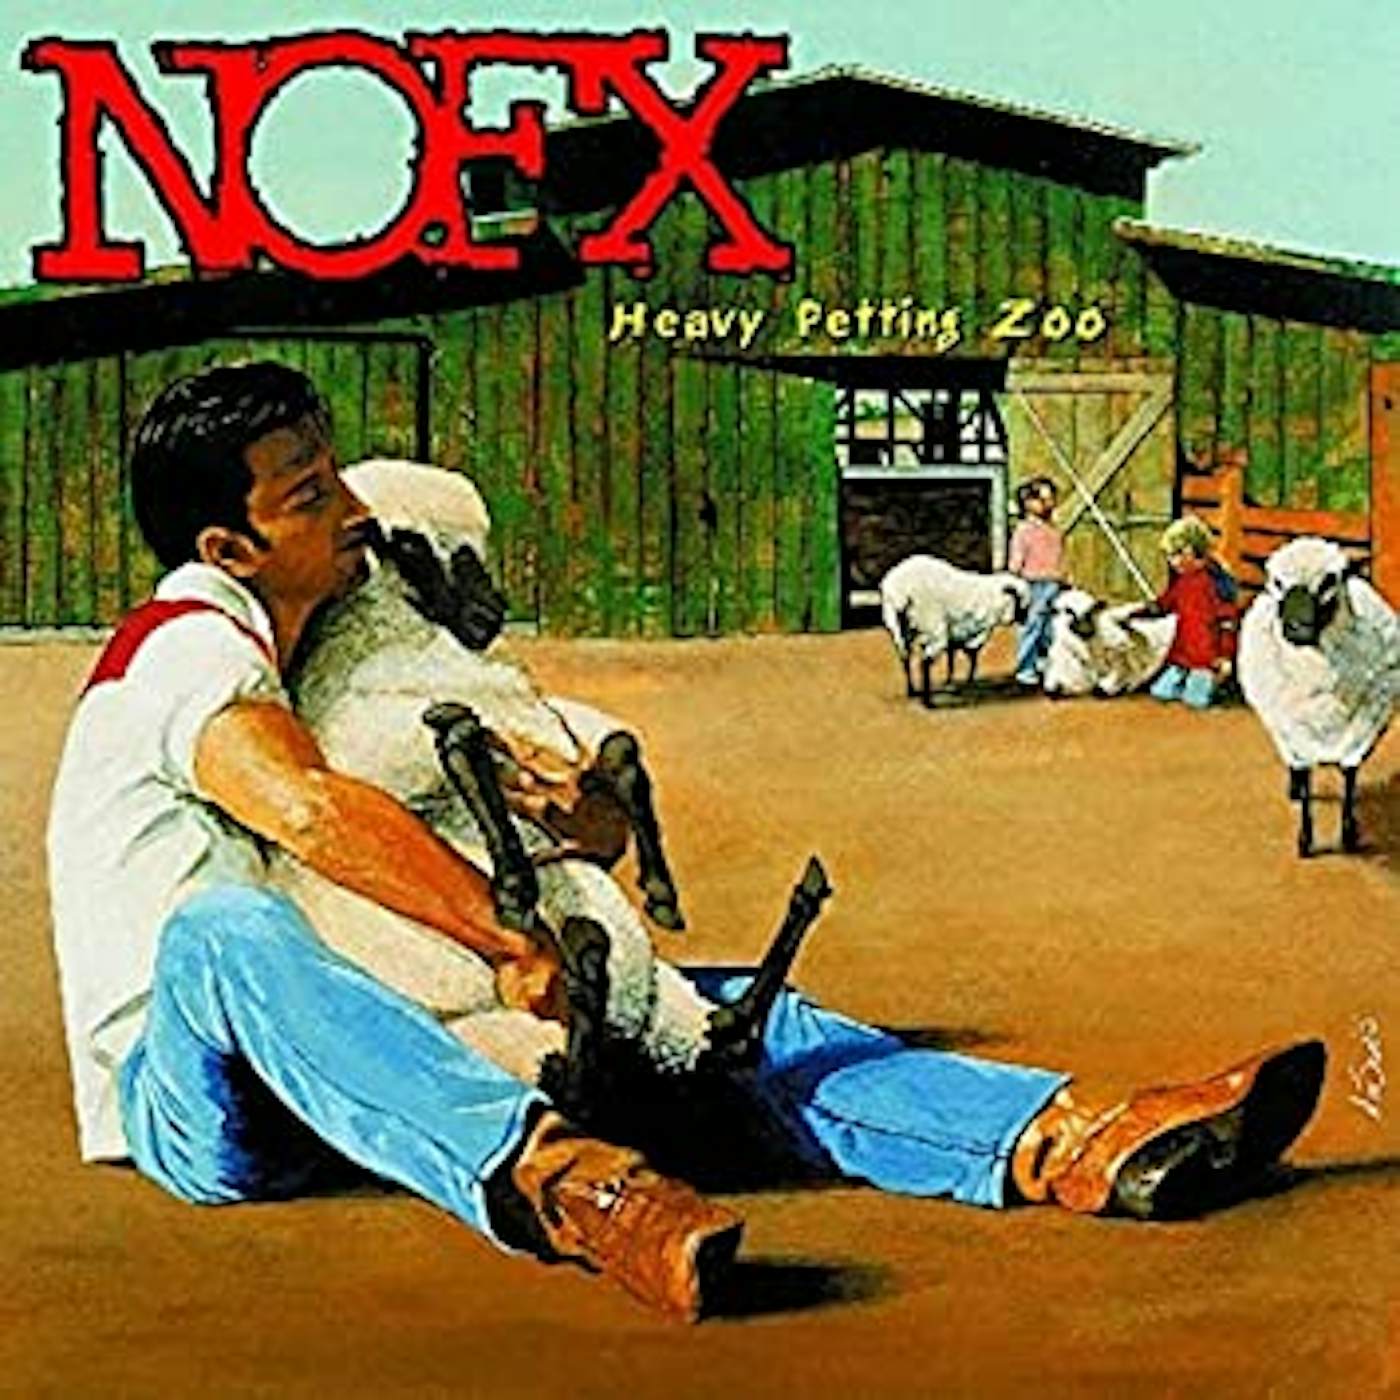 NOFX Heavy Petting Zoo Vinyl Record